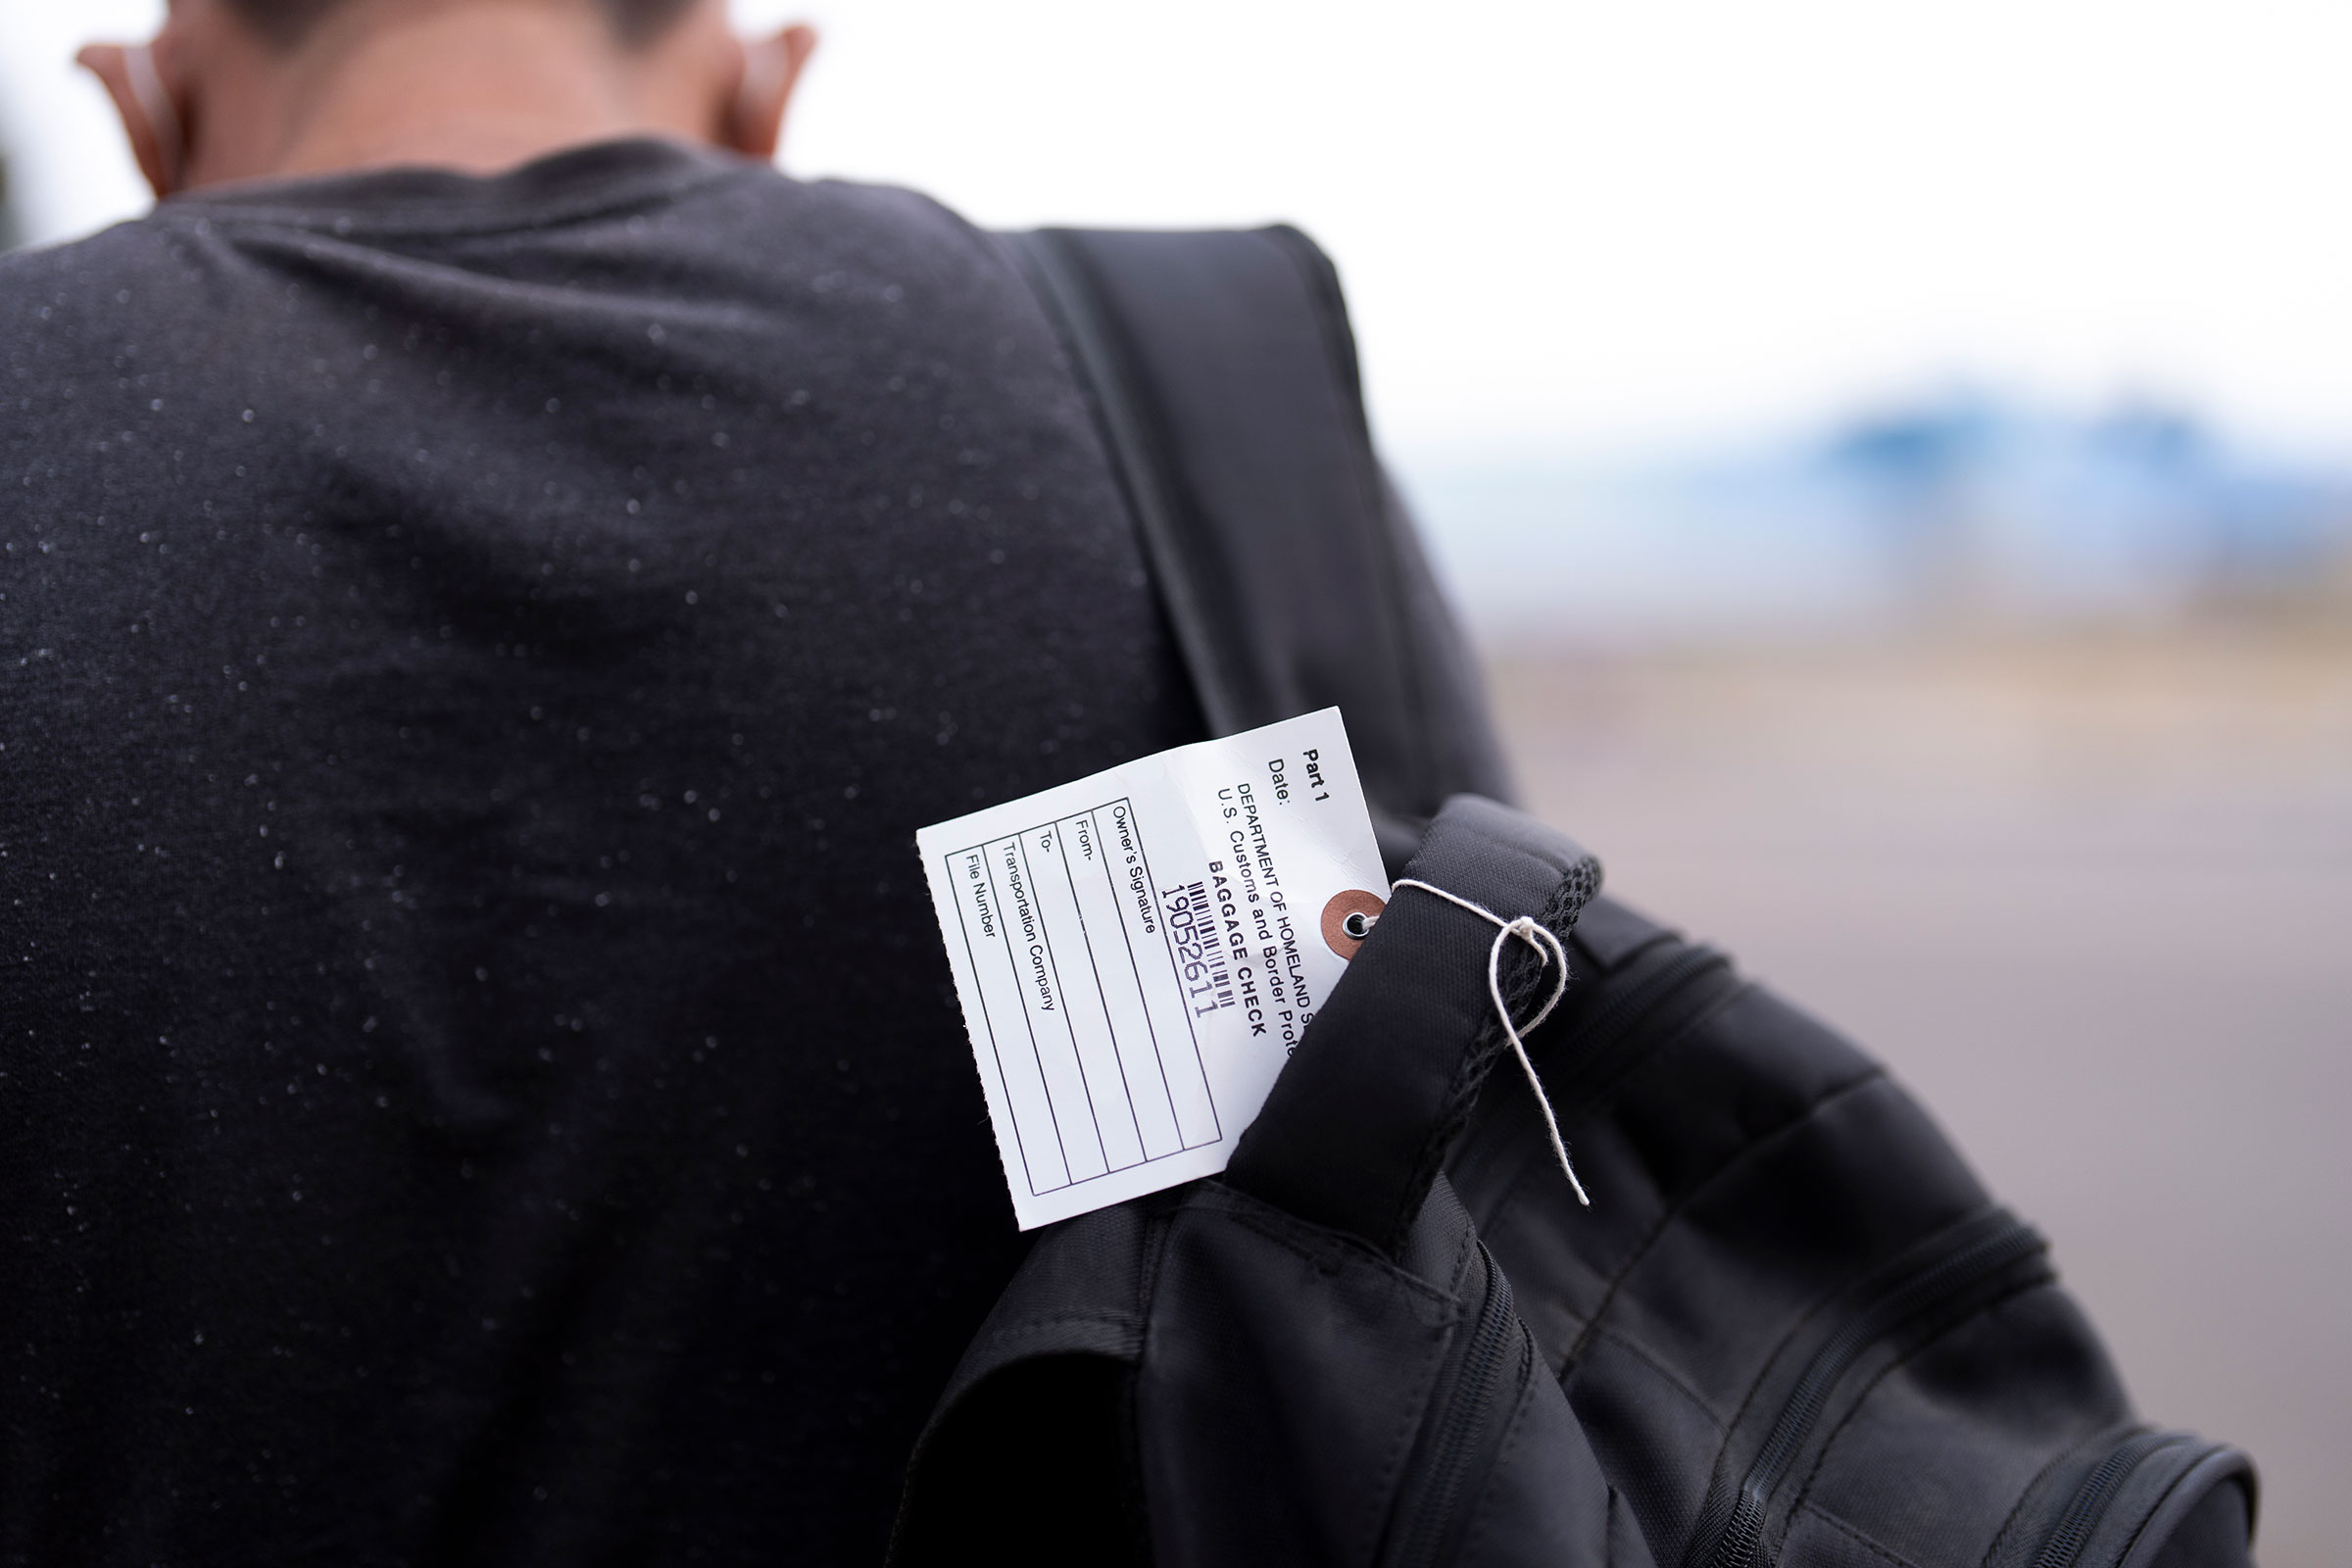 Un inmigrante en busca de asilo lleva una mochila con una etiqueta mientras busca opciones de transporte tras ser procesado y liberado, el martes 4 de junio, en San Diego. (Crédito: Gregory Bull/AP)